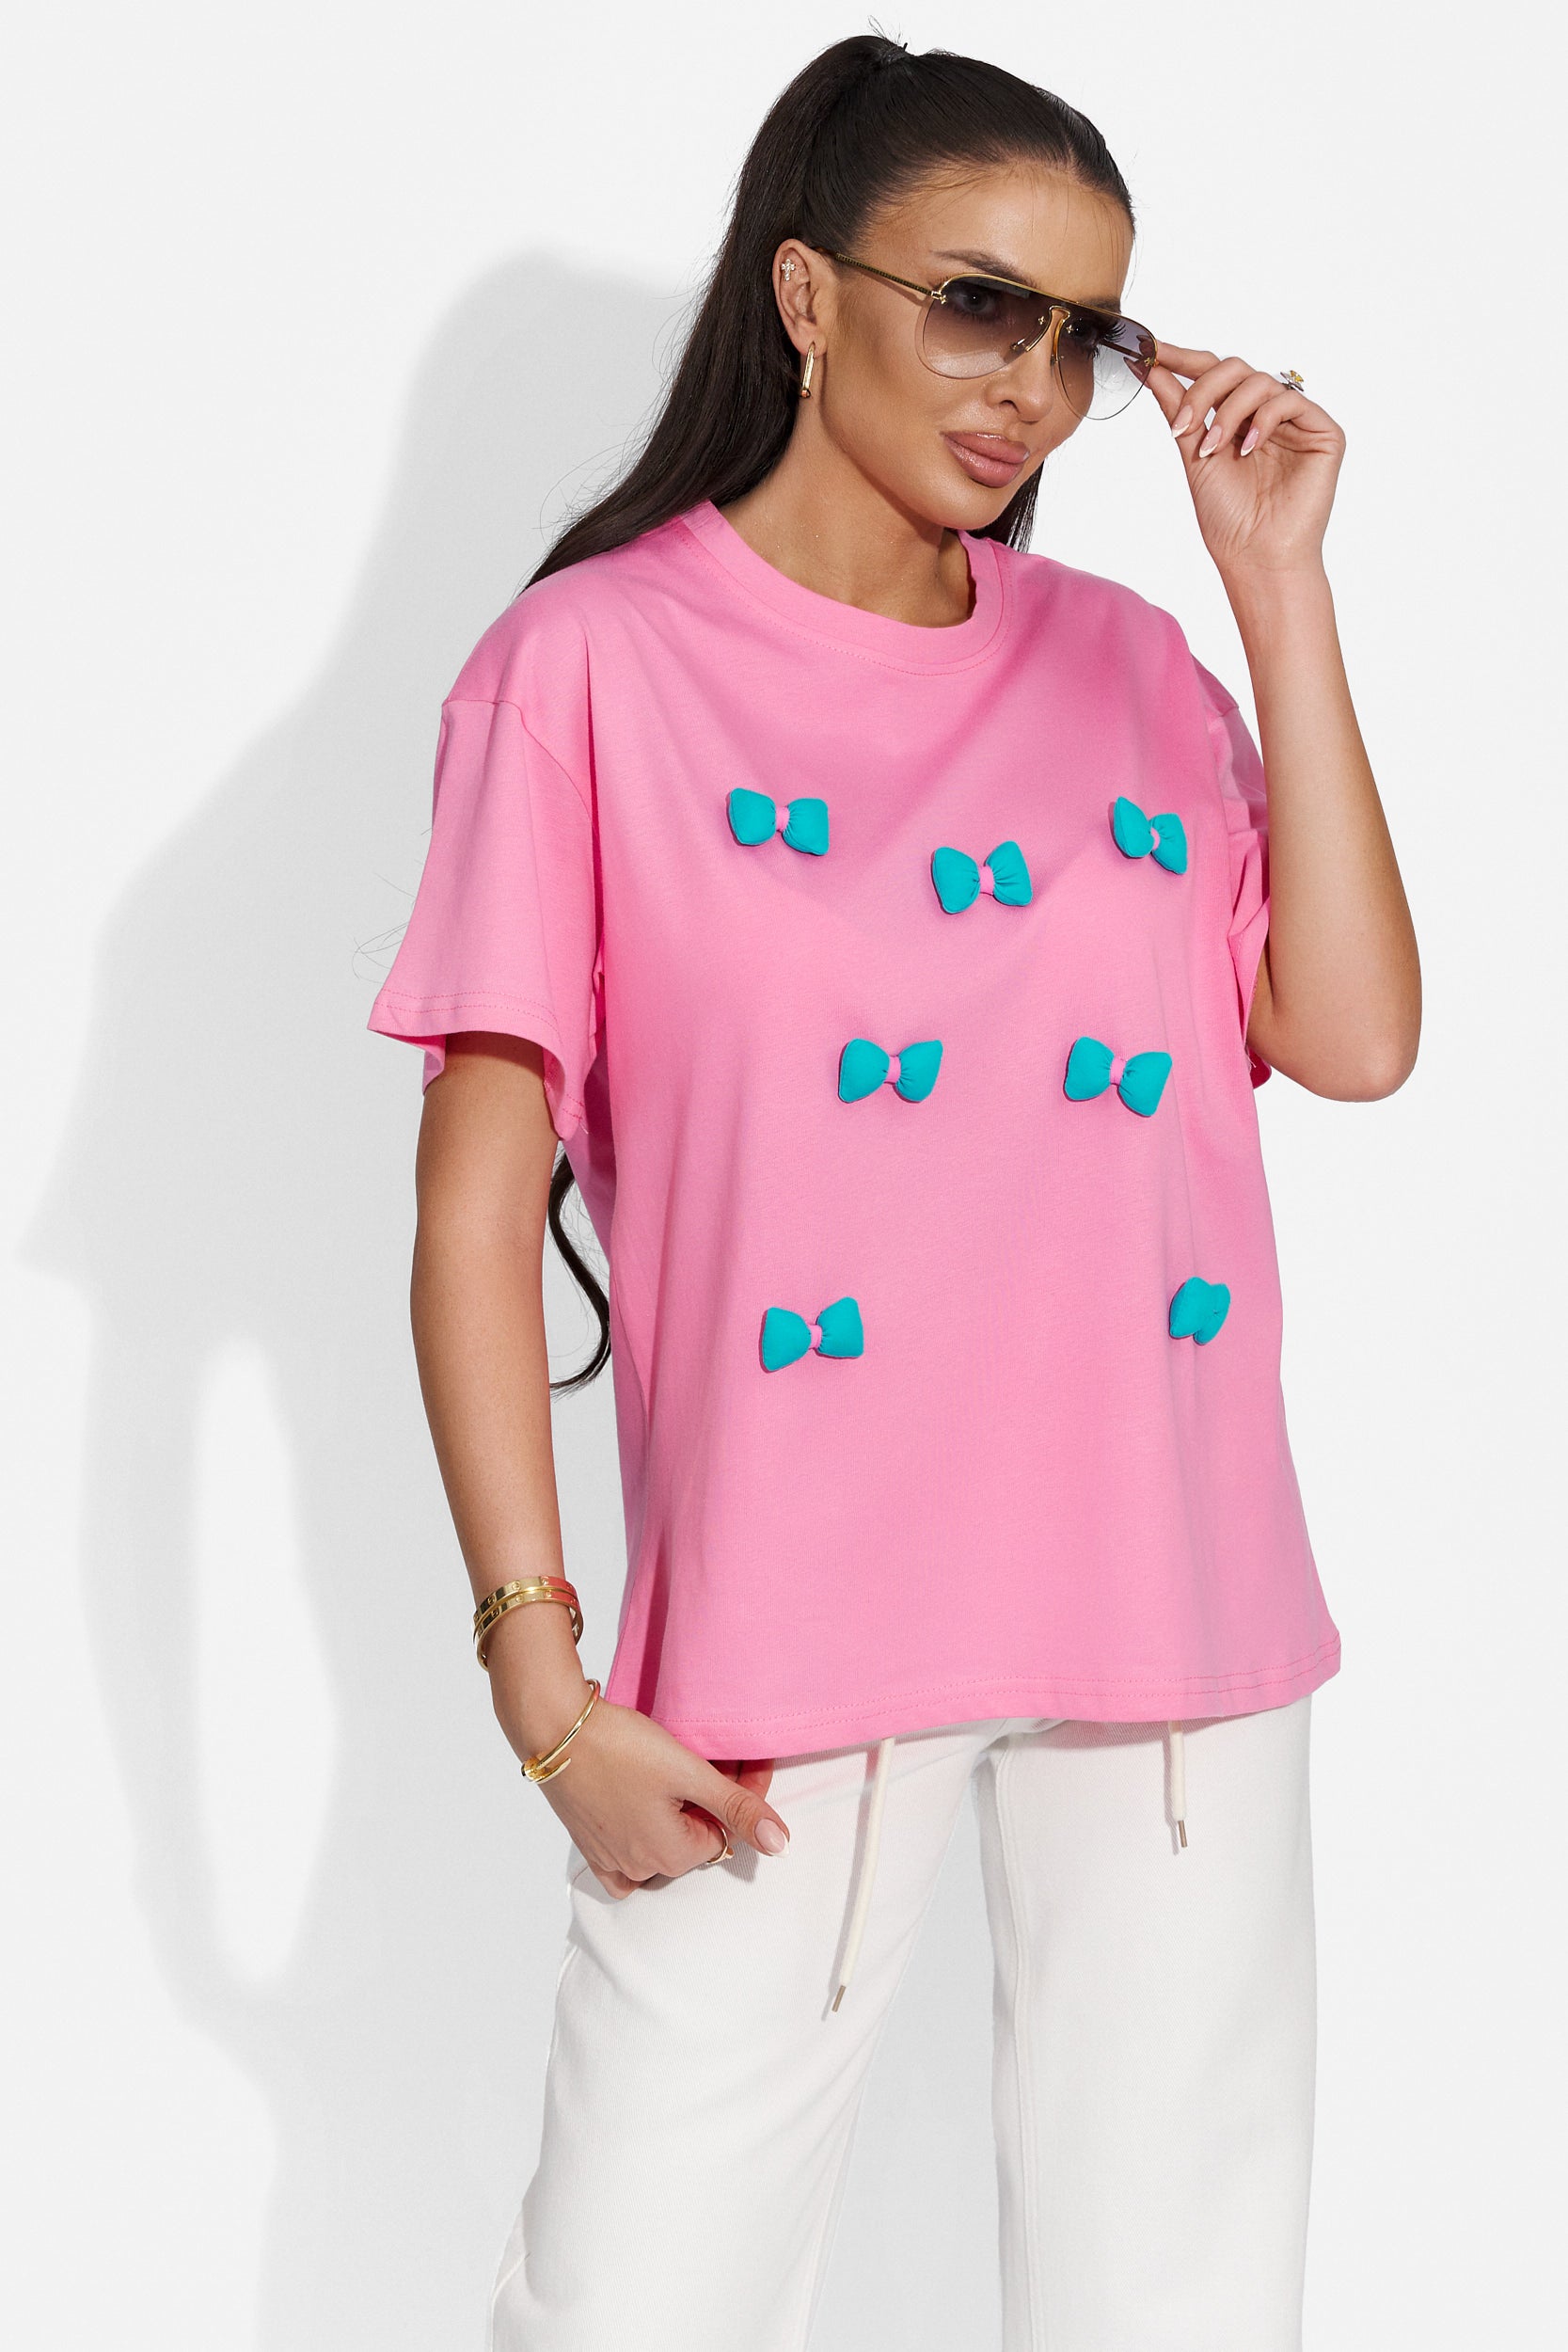 Noutany Bogas обикновена розова дамска тениска